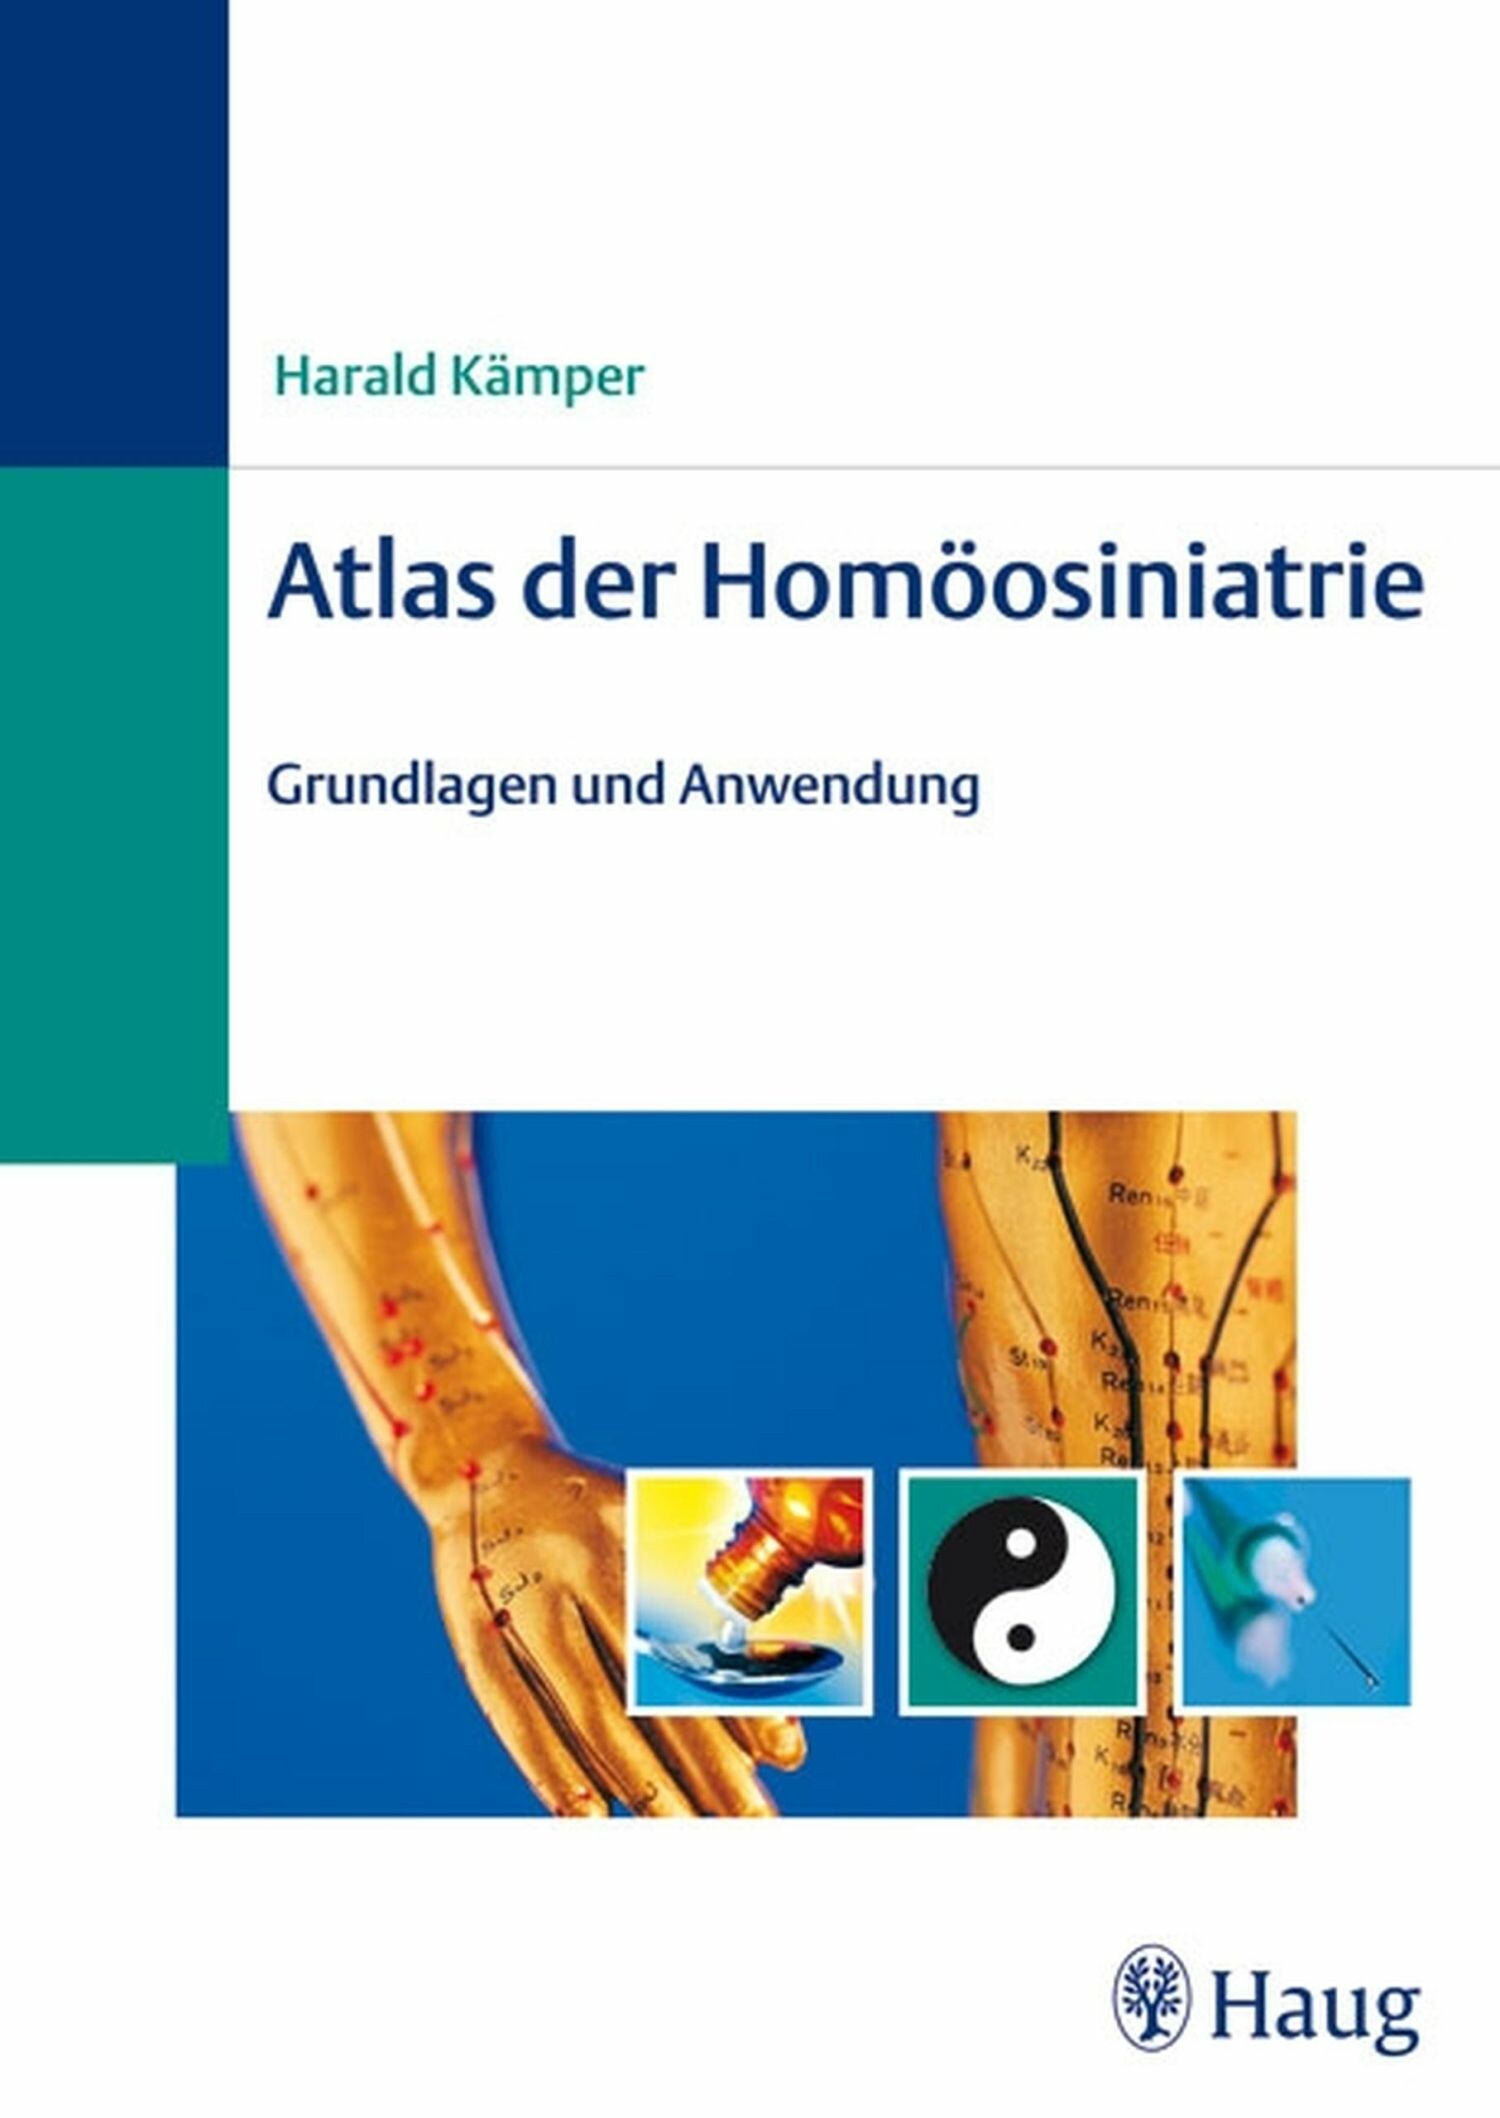 Atlas der Homöosiniatrie